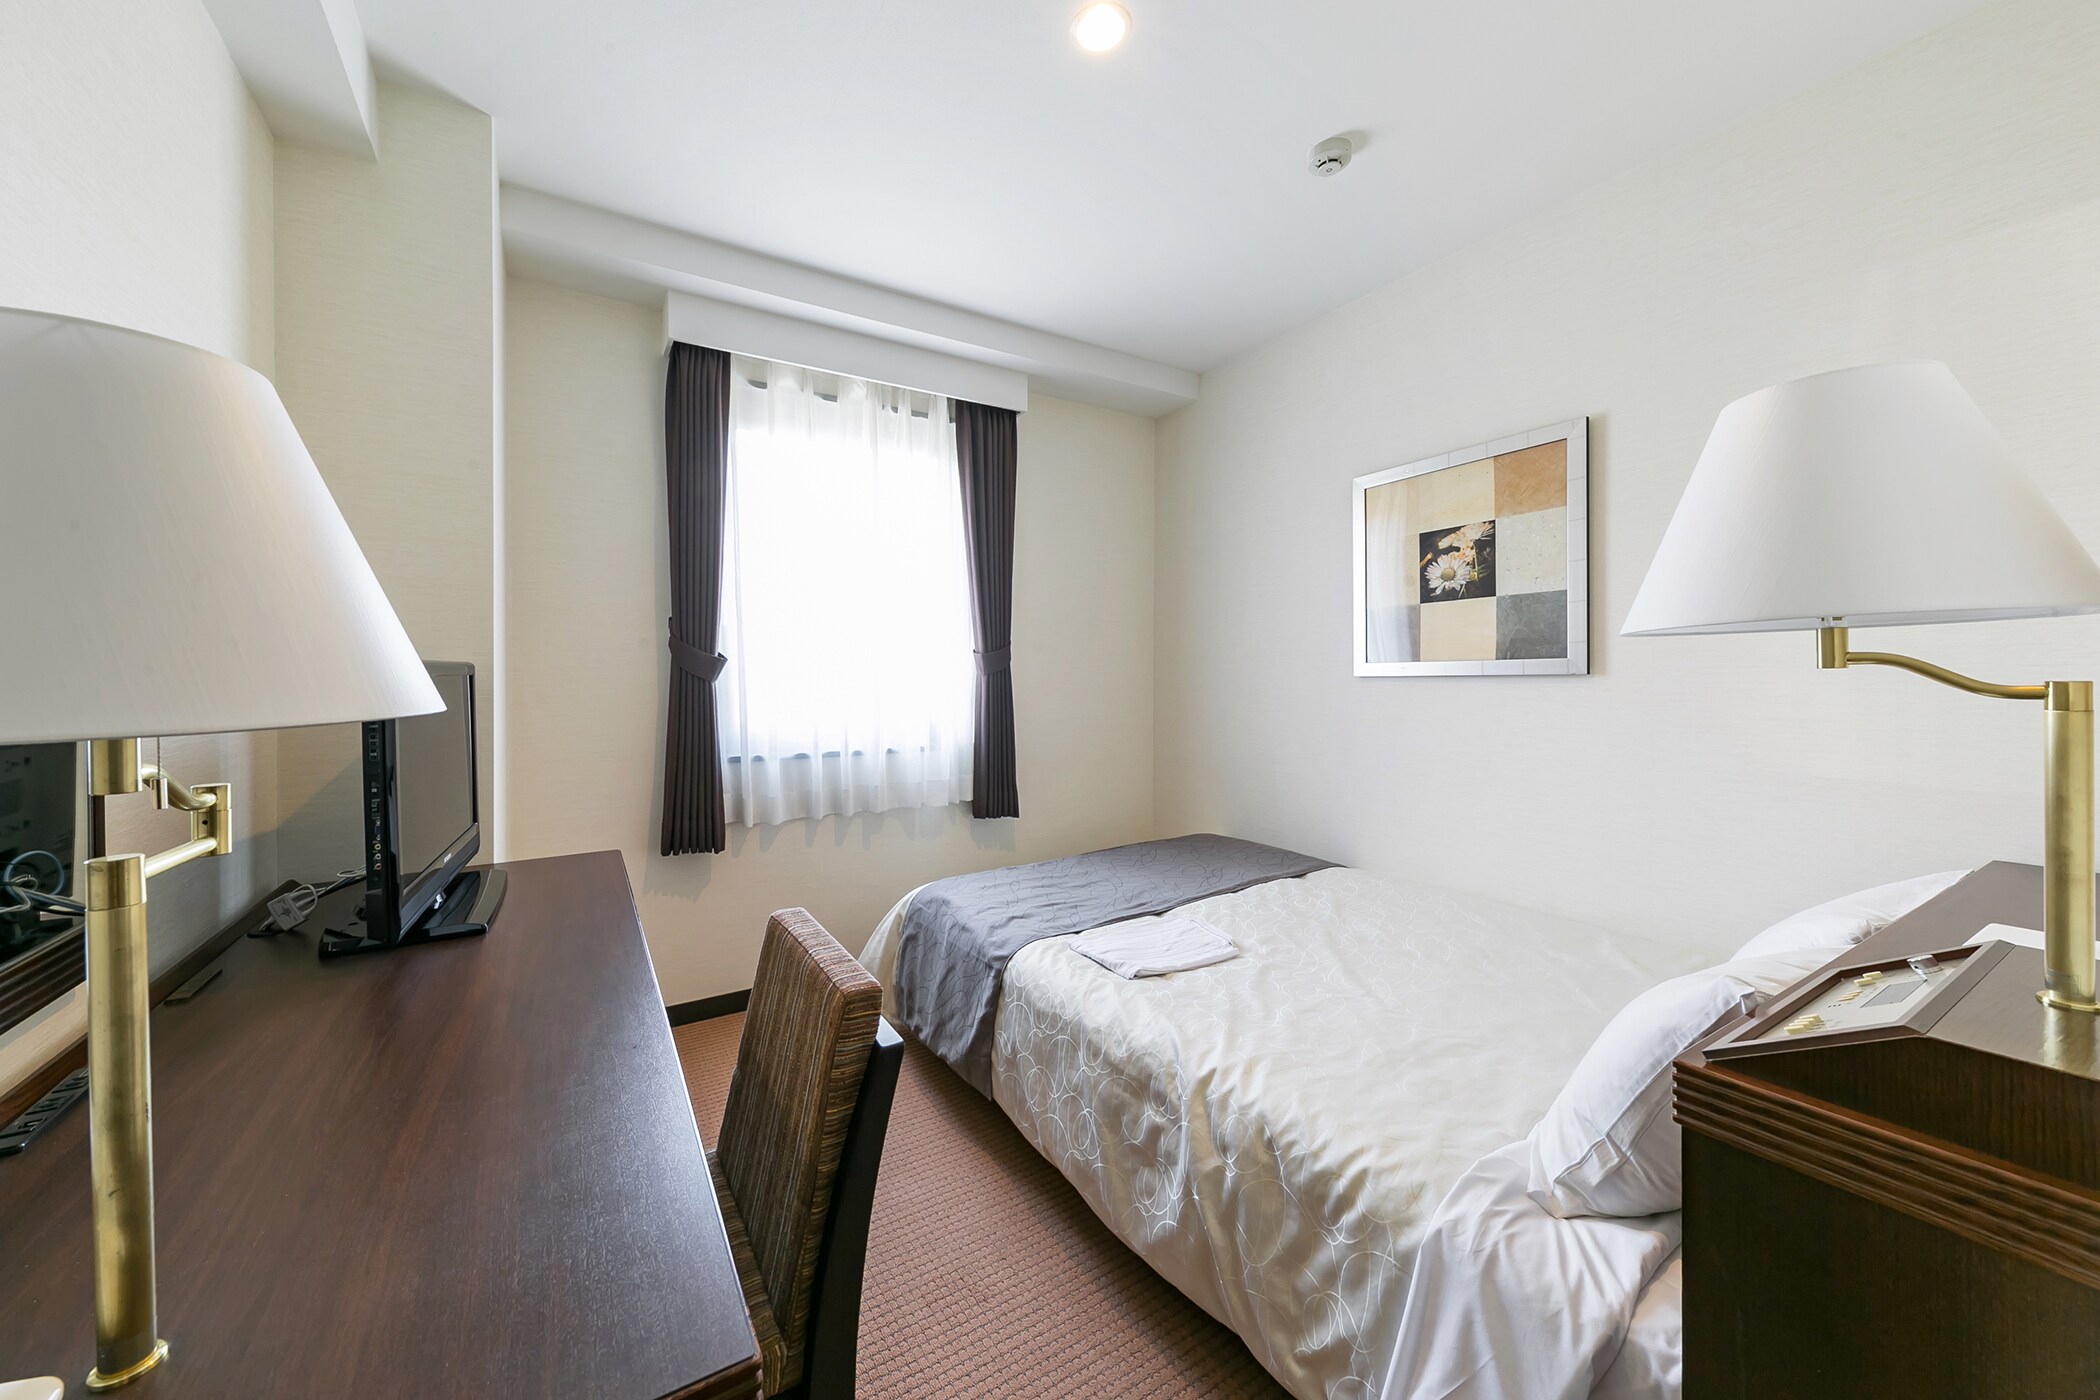 Kamar Single (kamar semi-double) dengan lebar tempat tidur 15,1 m2 / 140 cm